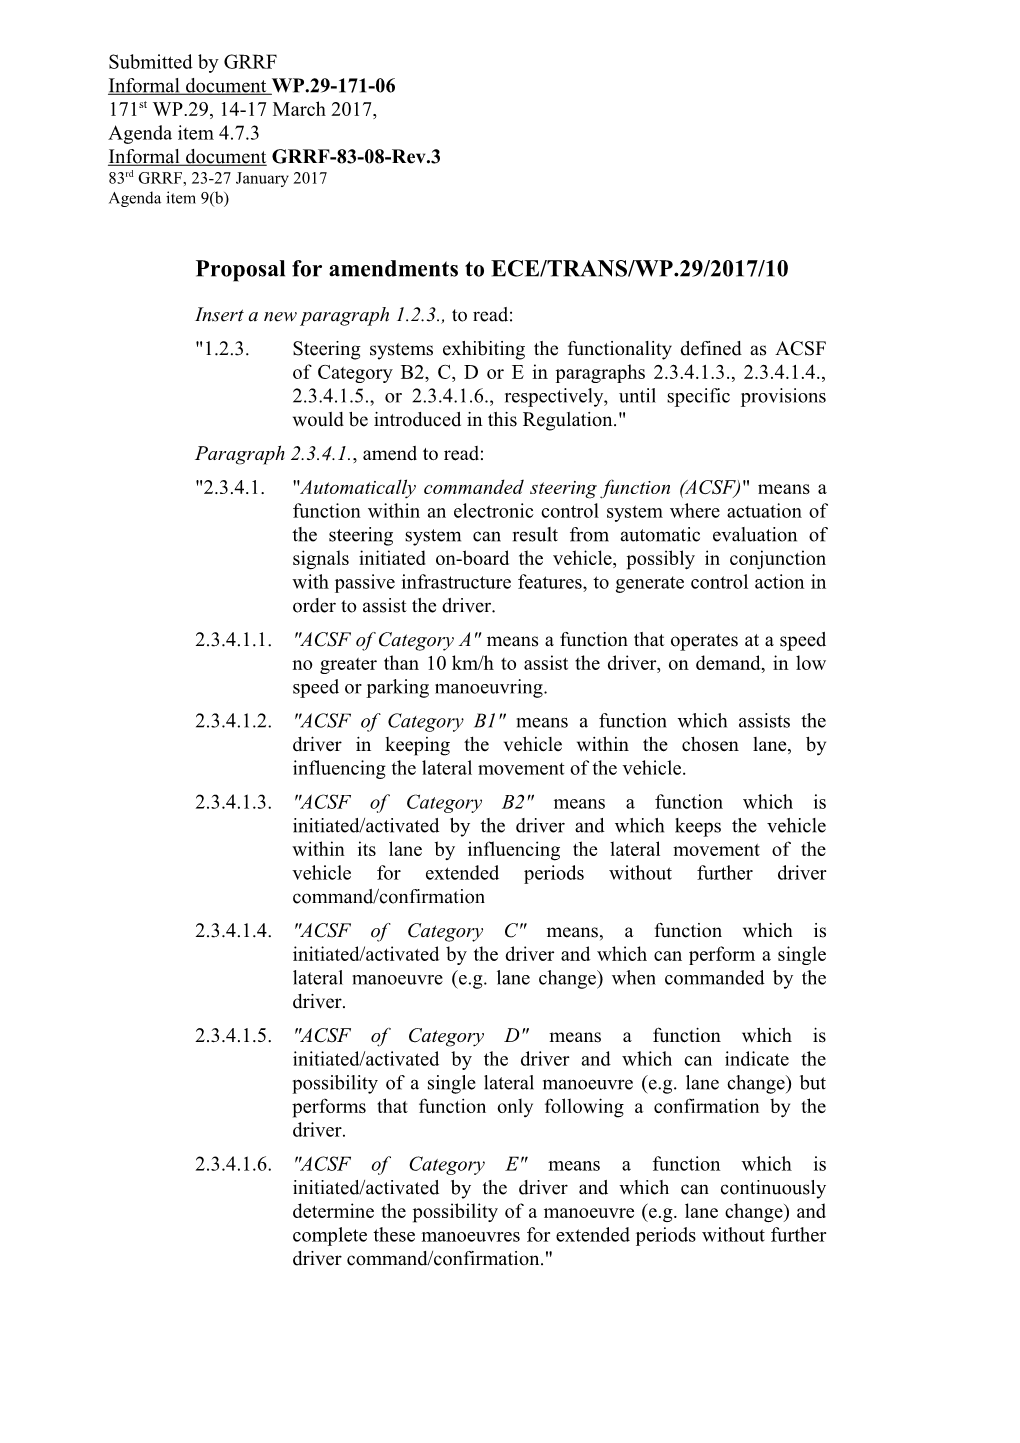 Proposal for Amendments to ECE/TRANS/WP.29/2017/10